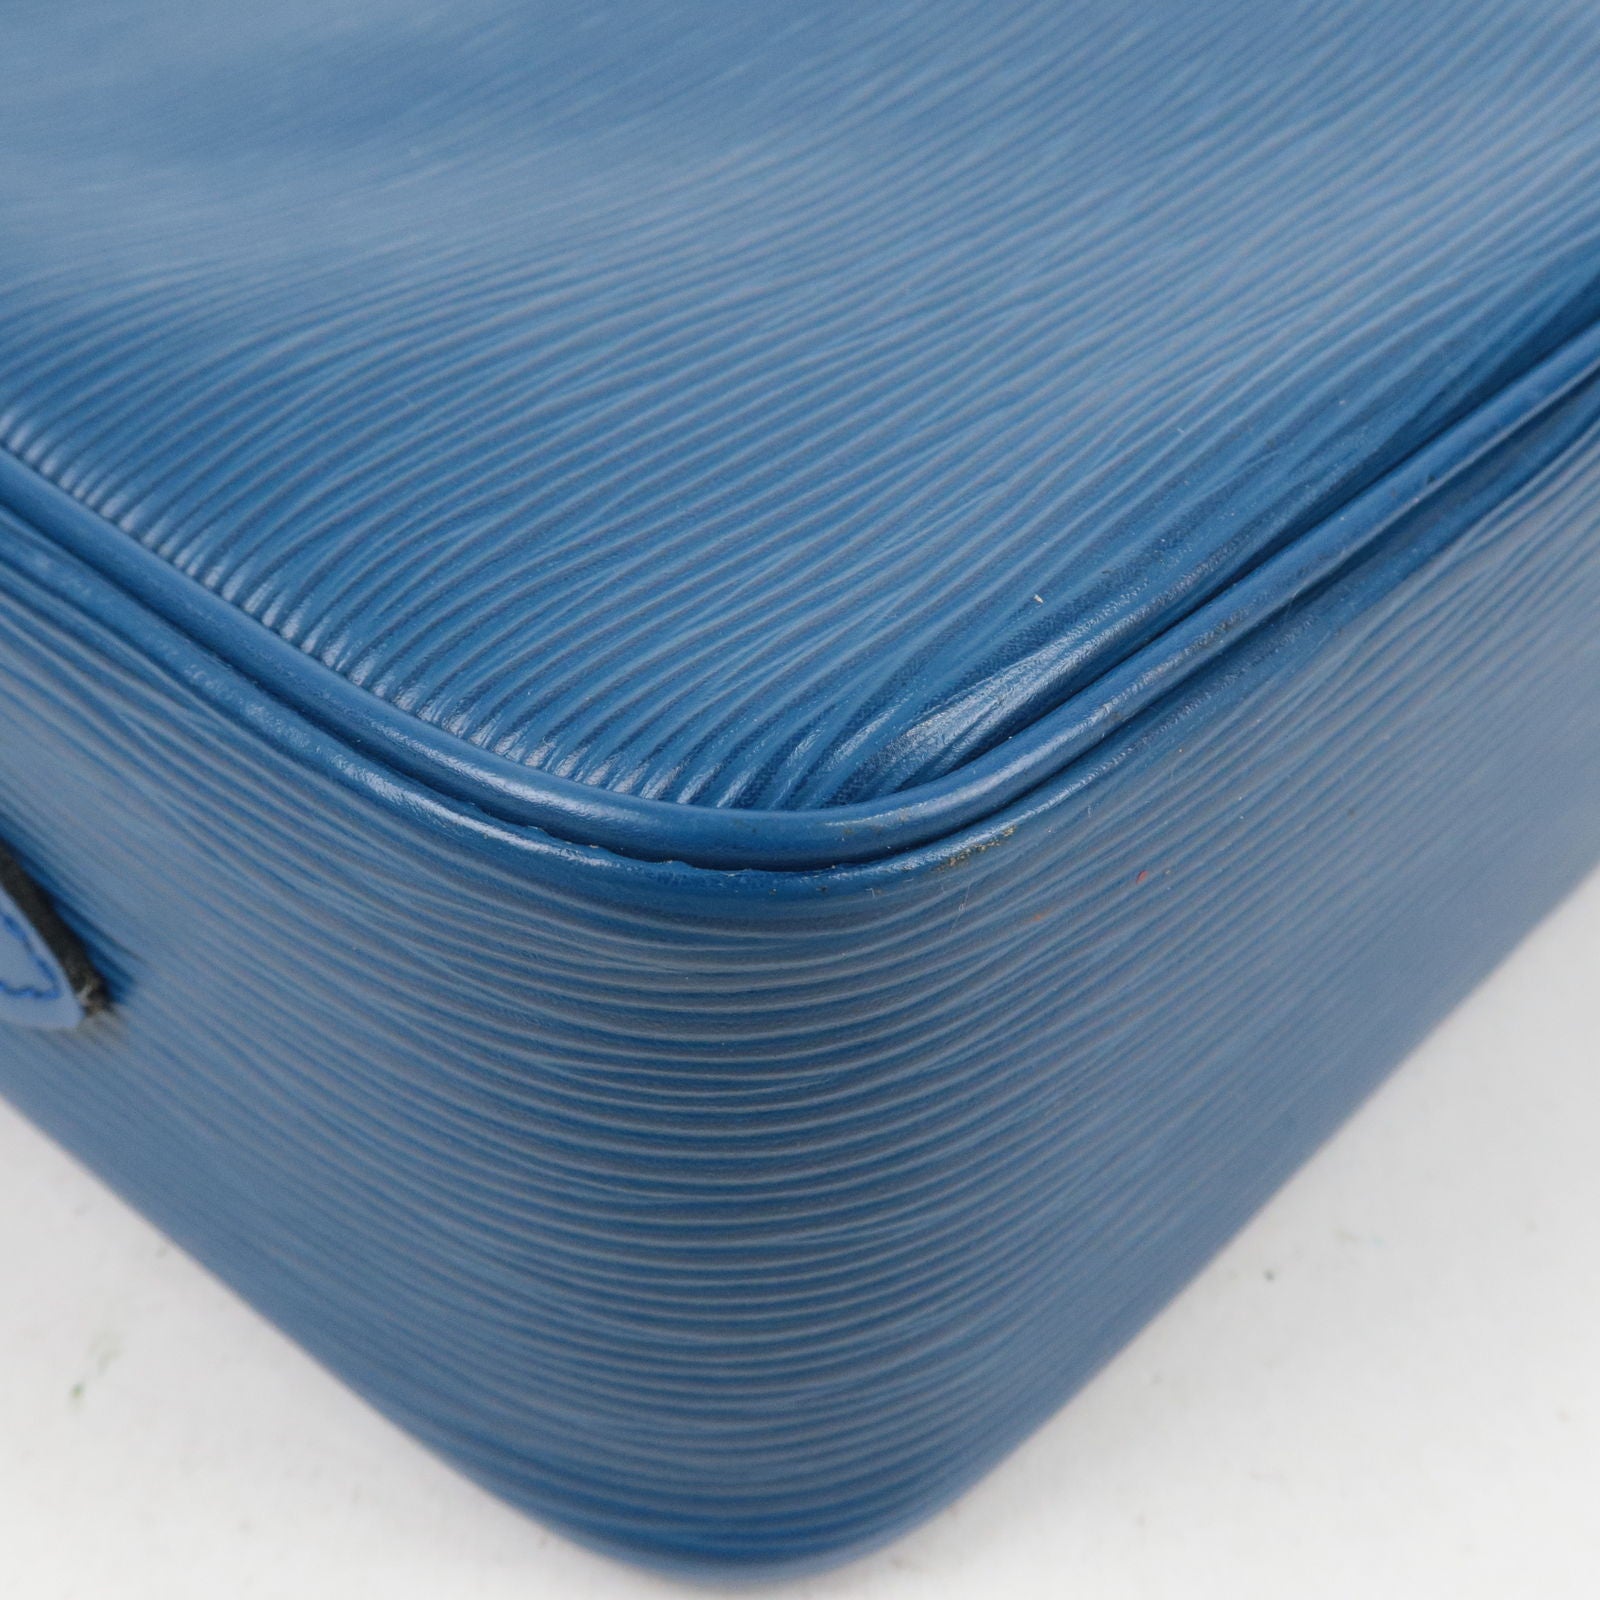 Louis - Shoulder - 27 - Blue - Toledo - M51315 – Louis Vuitton pre